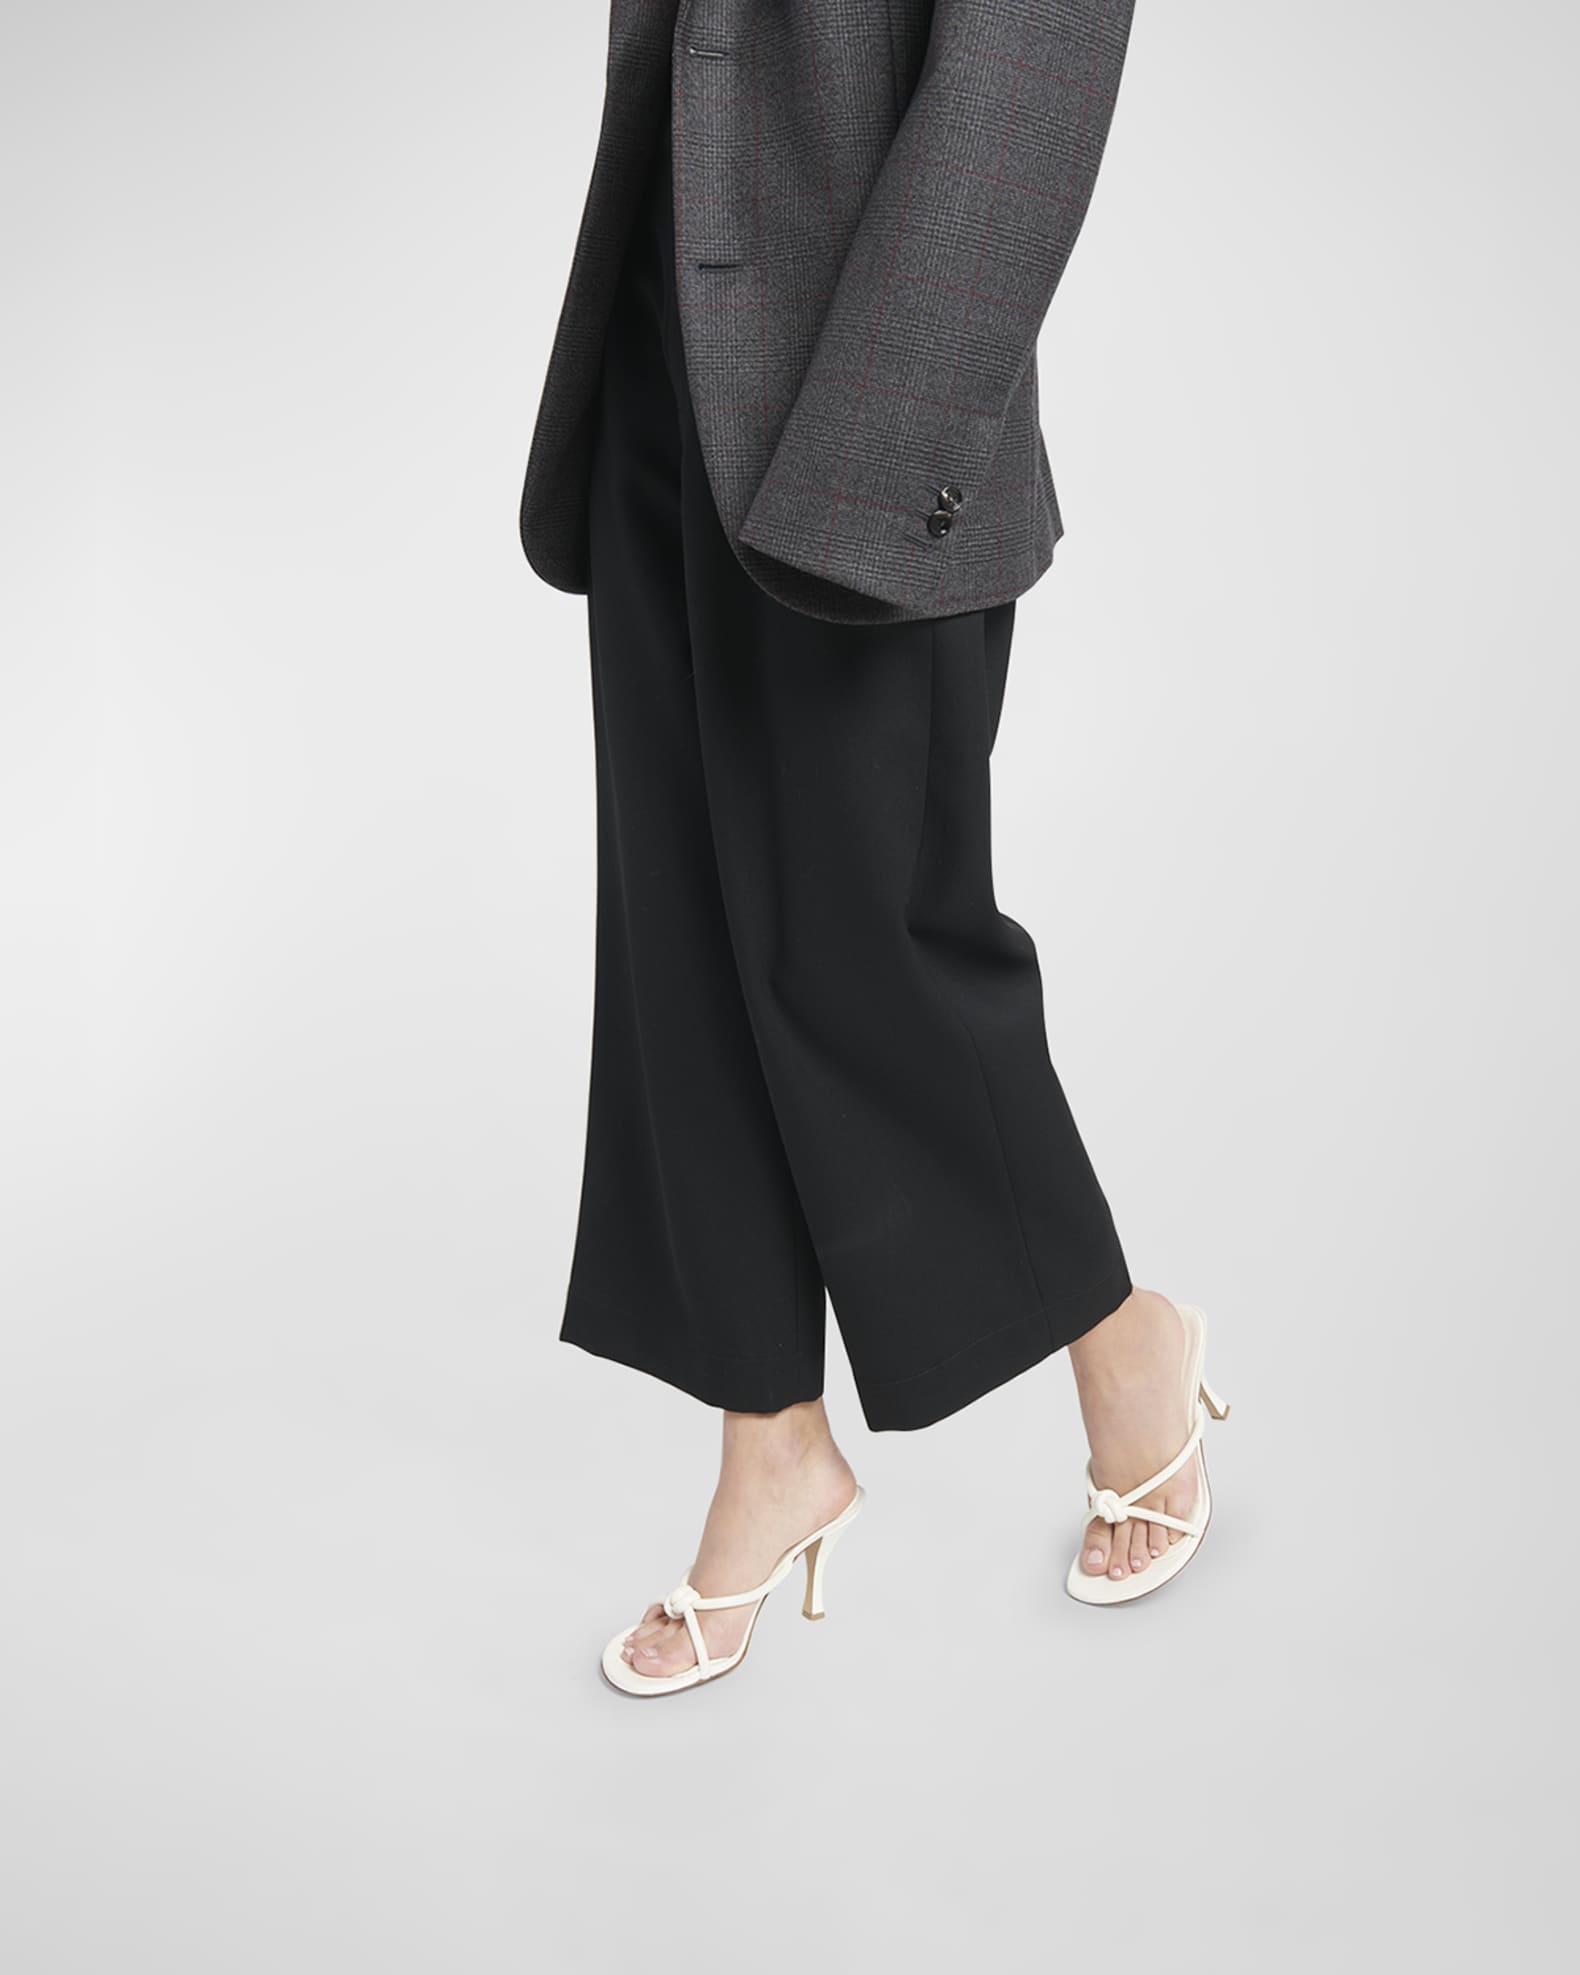 Bottega Veneta Blink Leather Knot Slide Sandals | Neiman Marcus